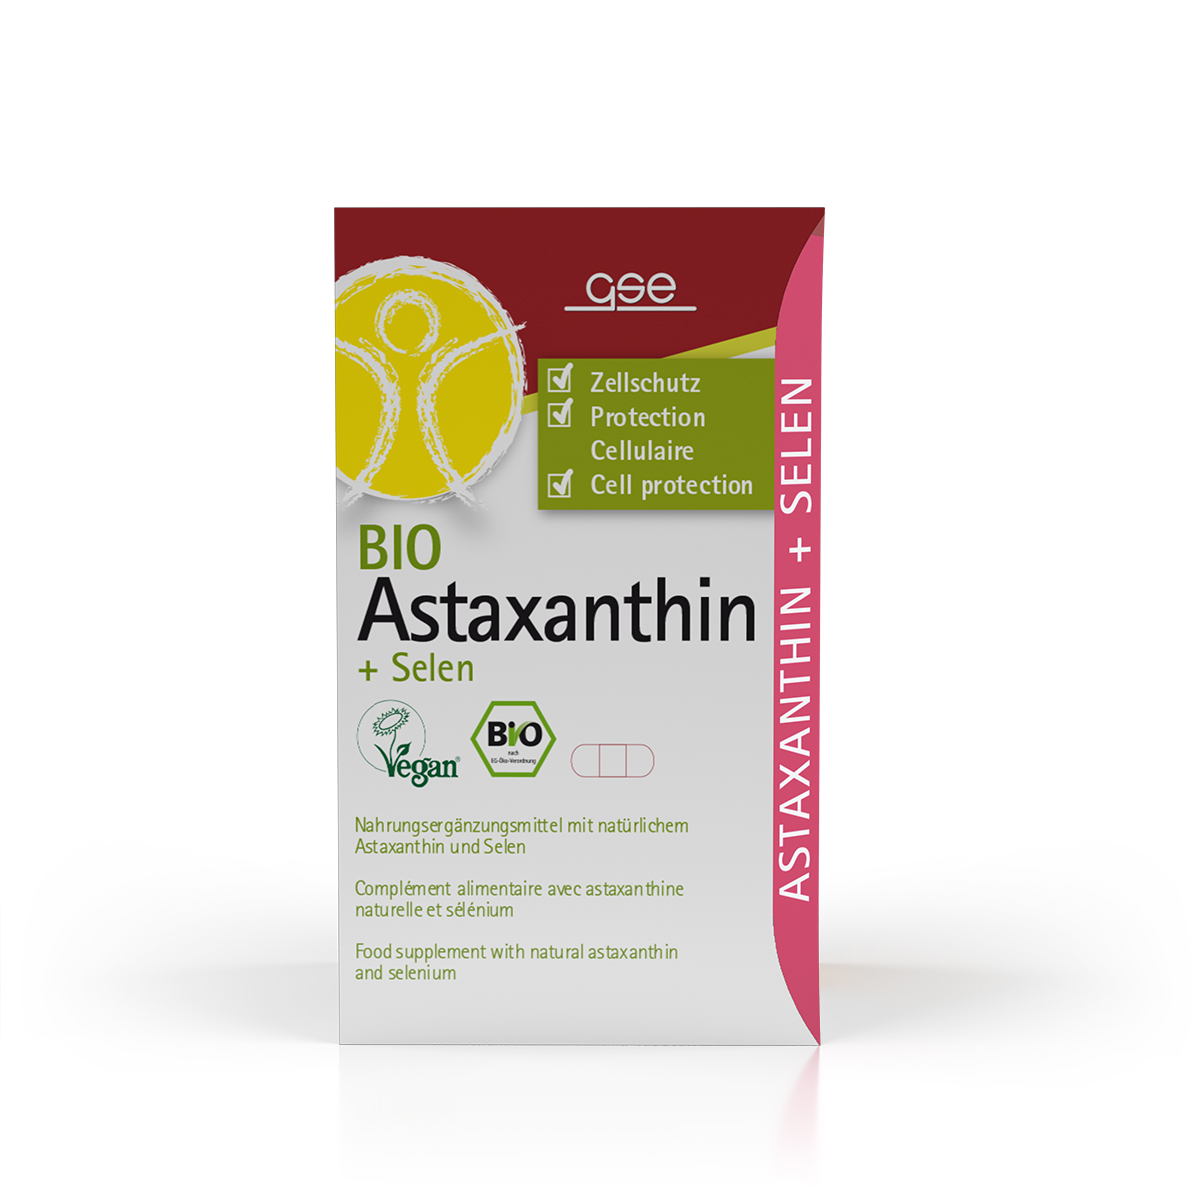 Astaxanthin + Selen (Bio)